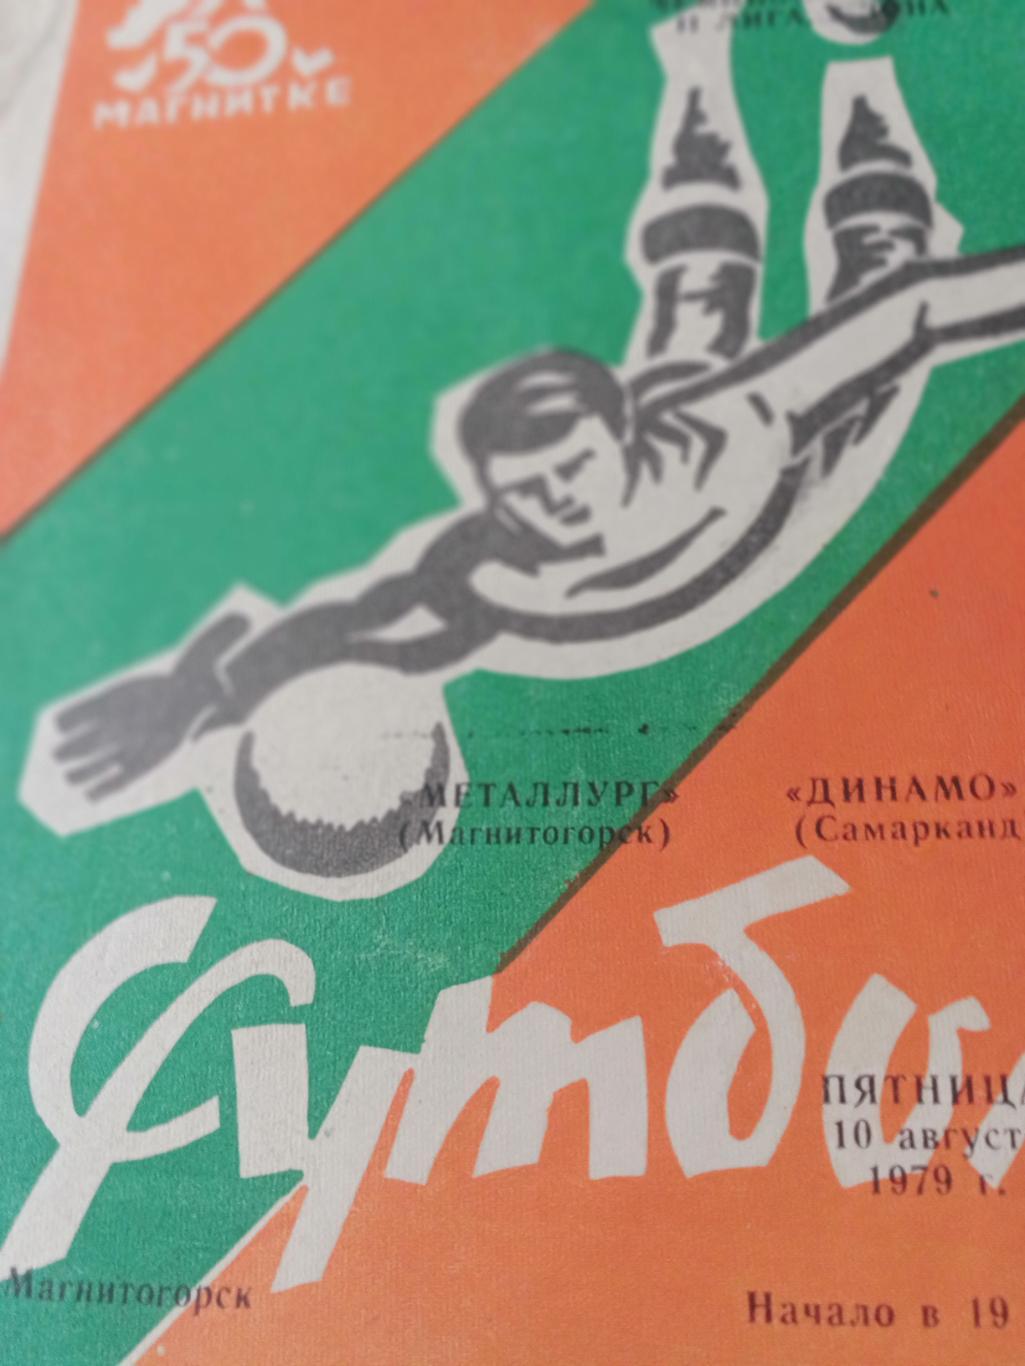 Металлург Магнитогорск - Динамо Самарканд. 10 августа 1979 год